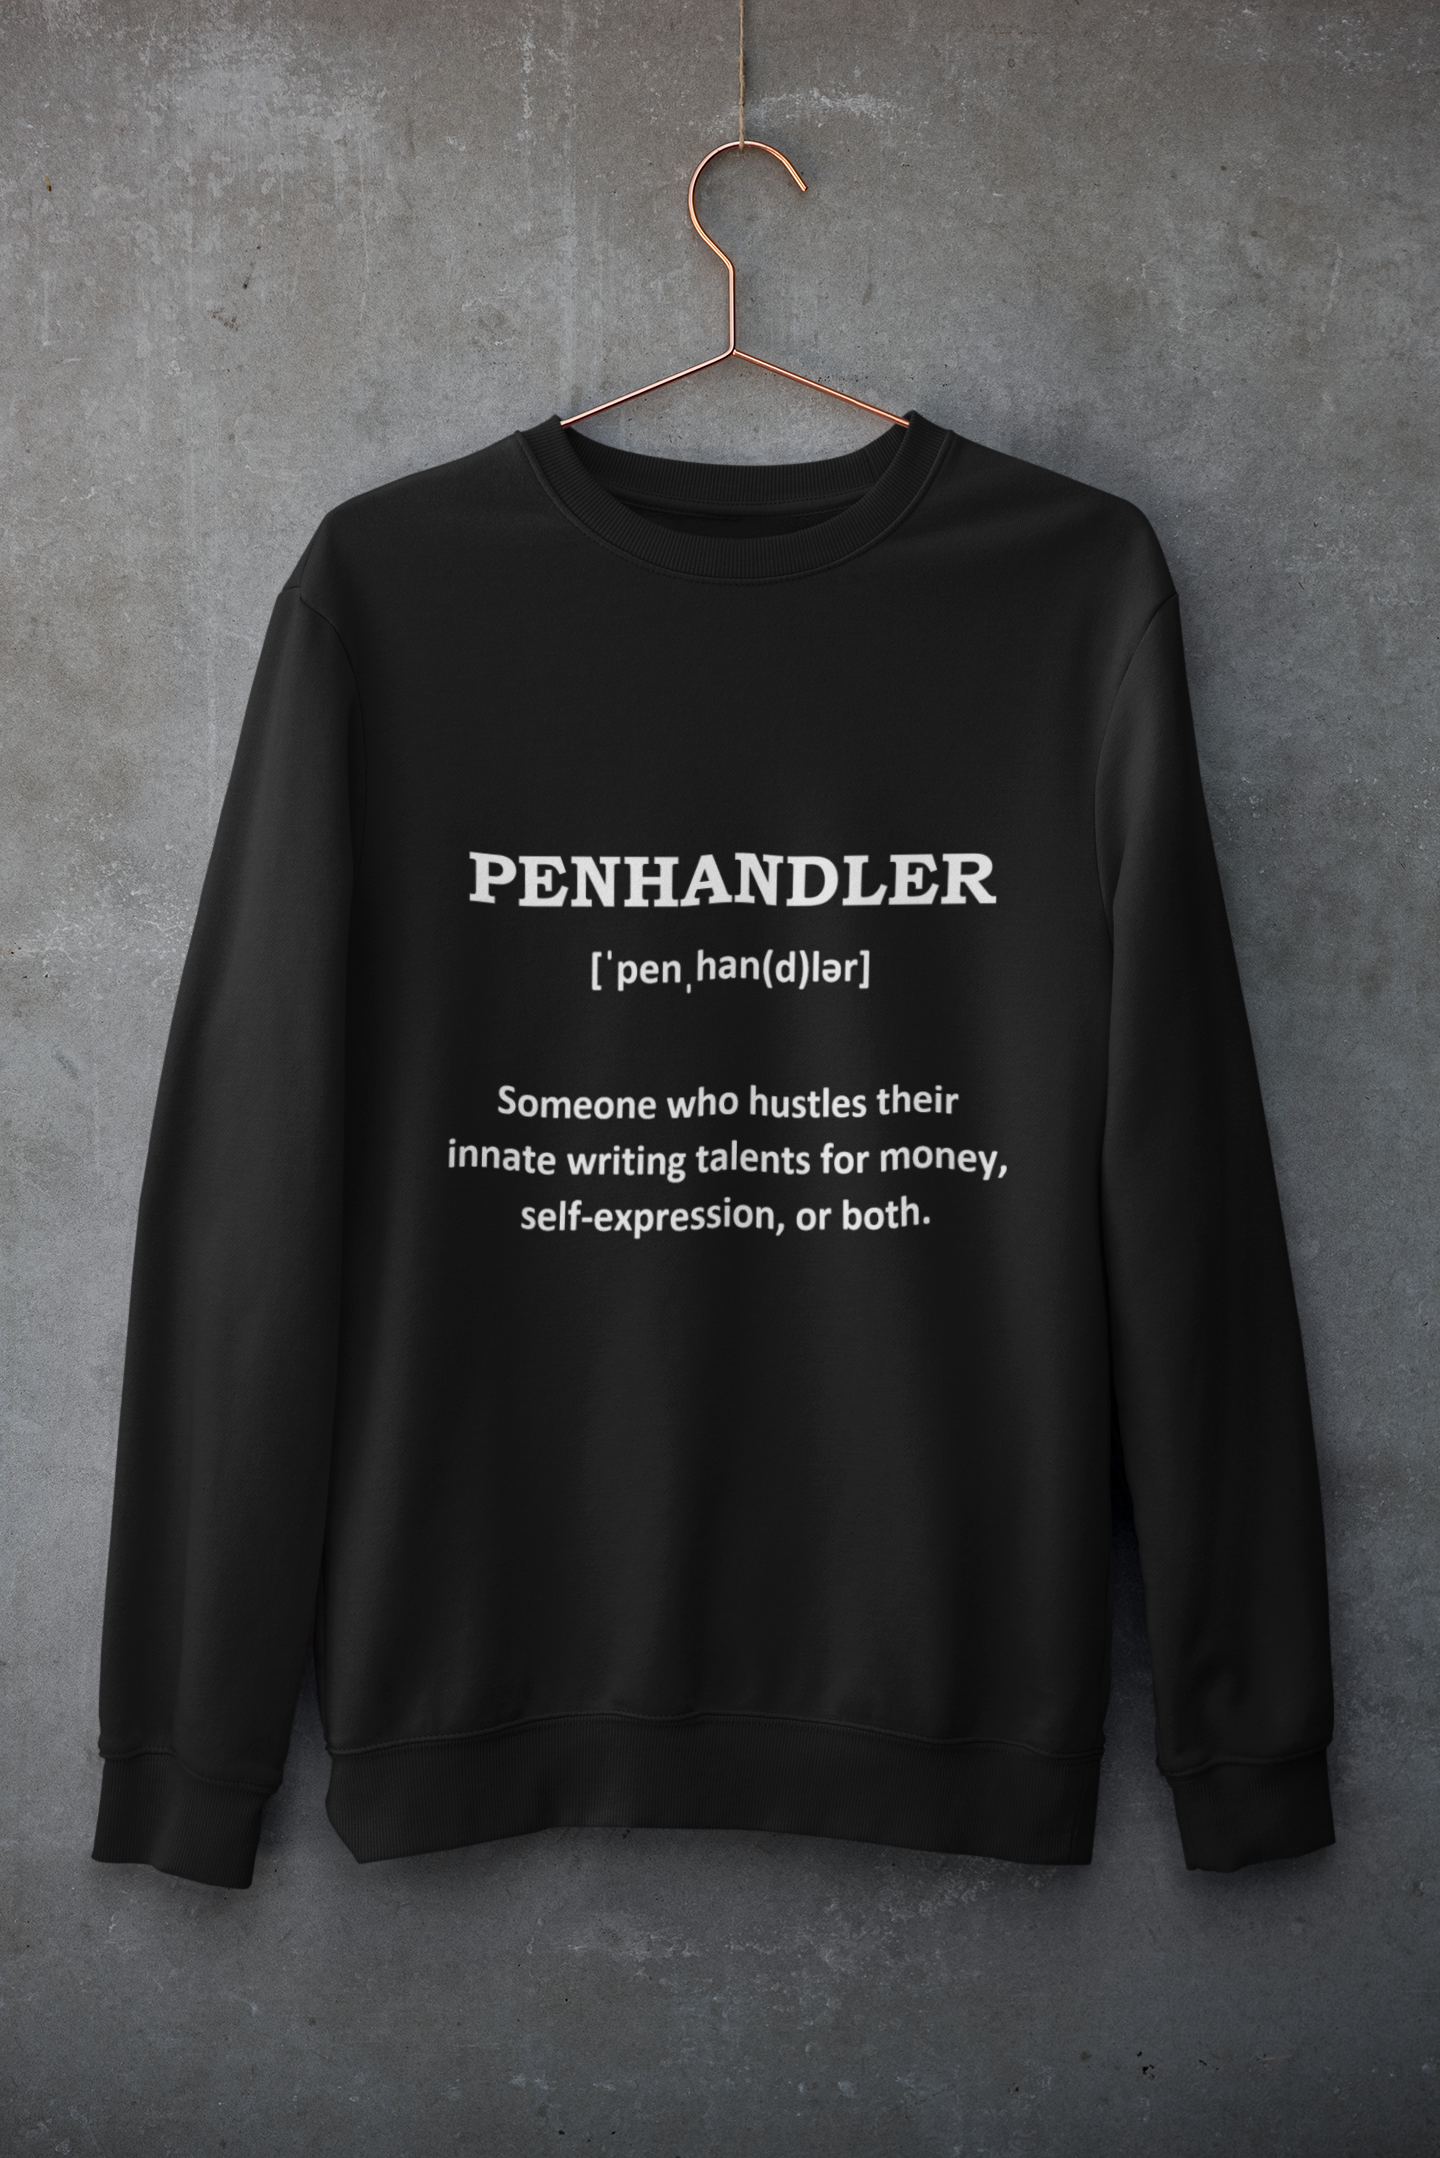 "Penhandler" Defined: Sweatshirt